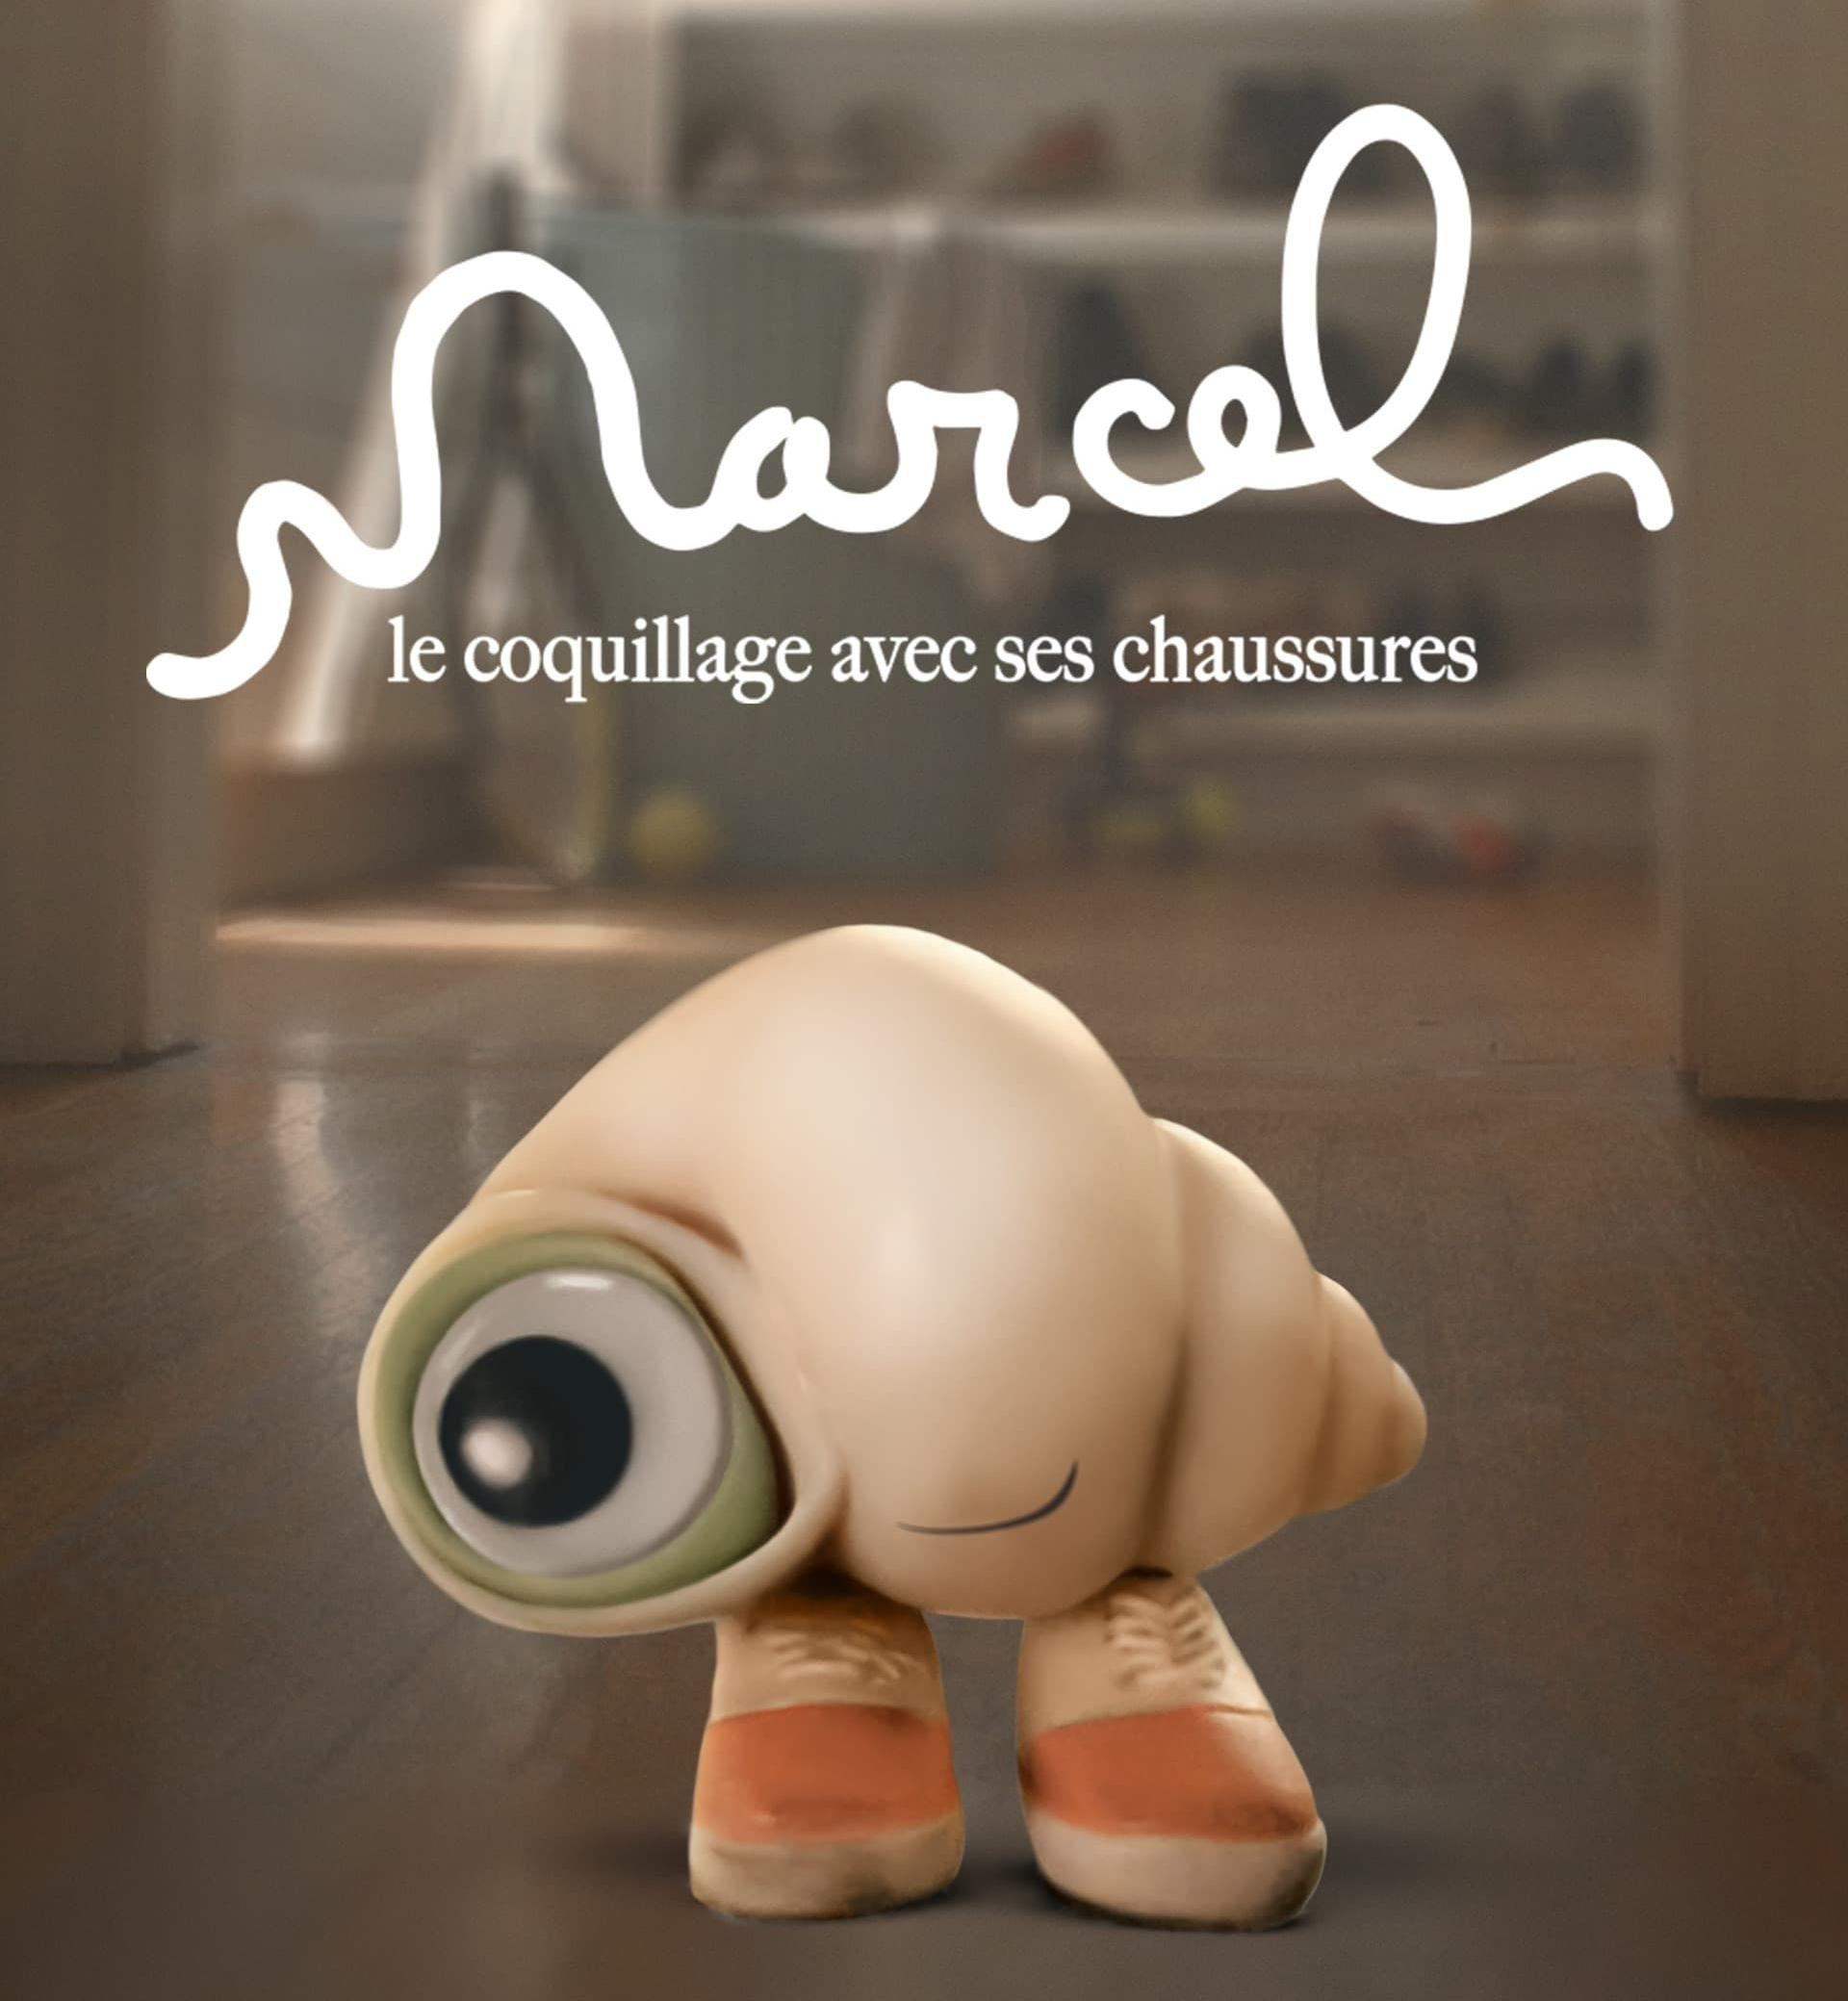 Couverture du film  "Marcel le coquillage "